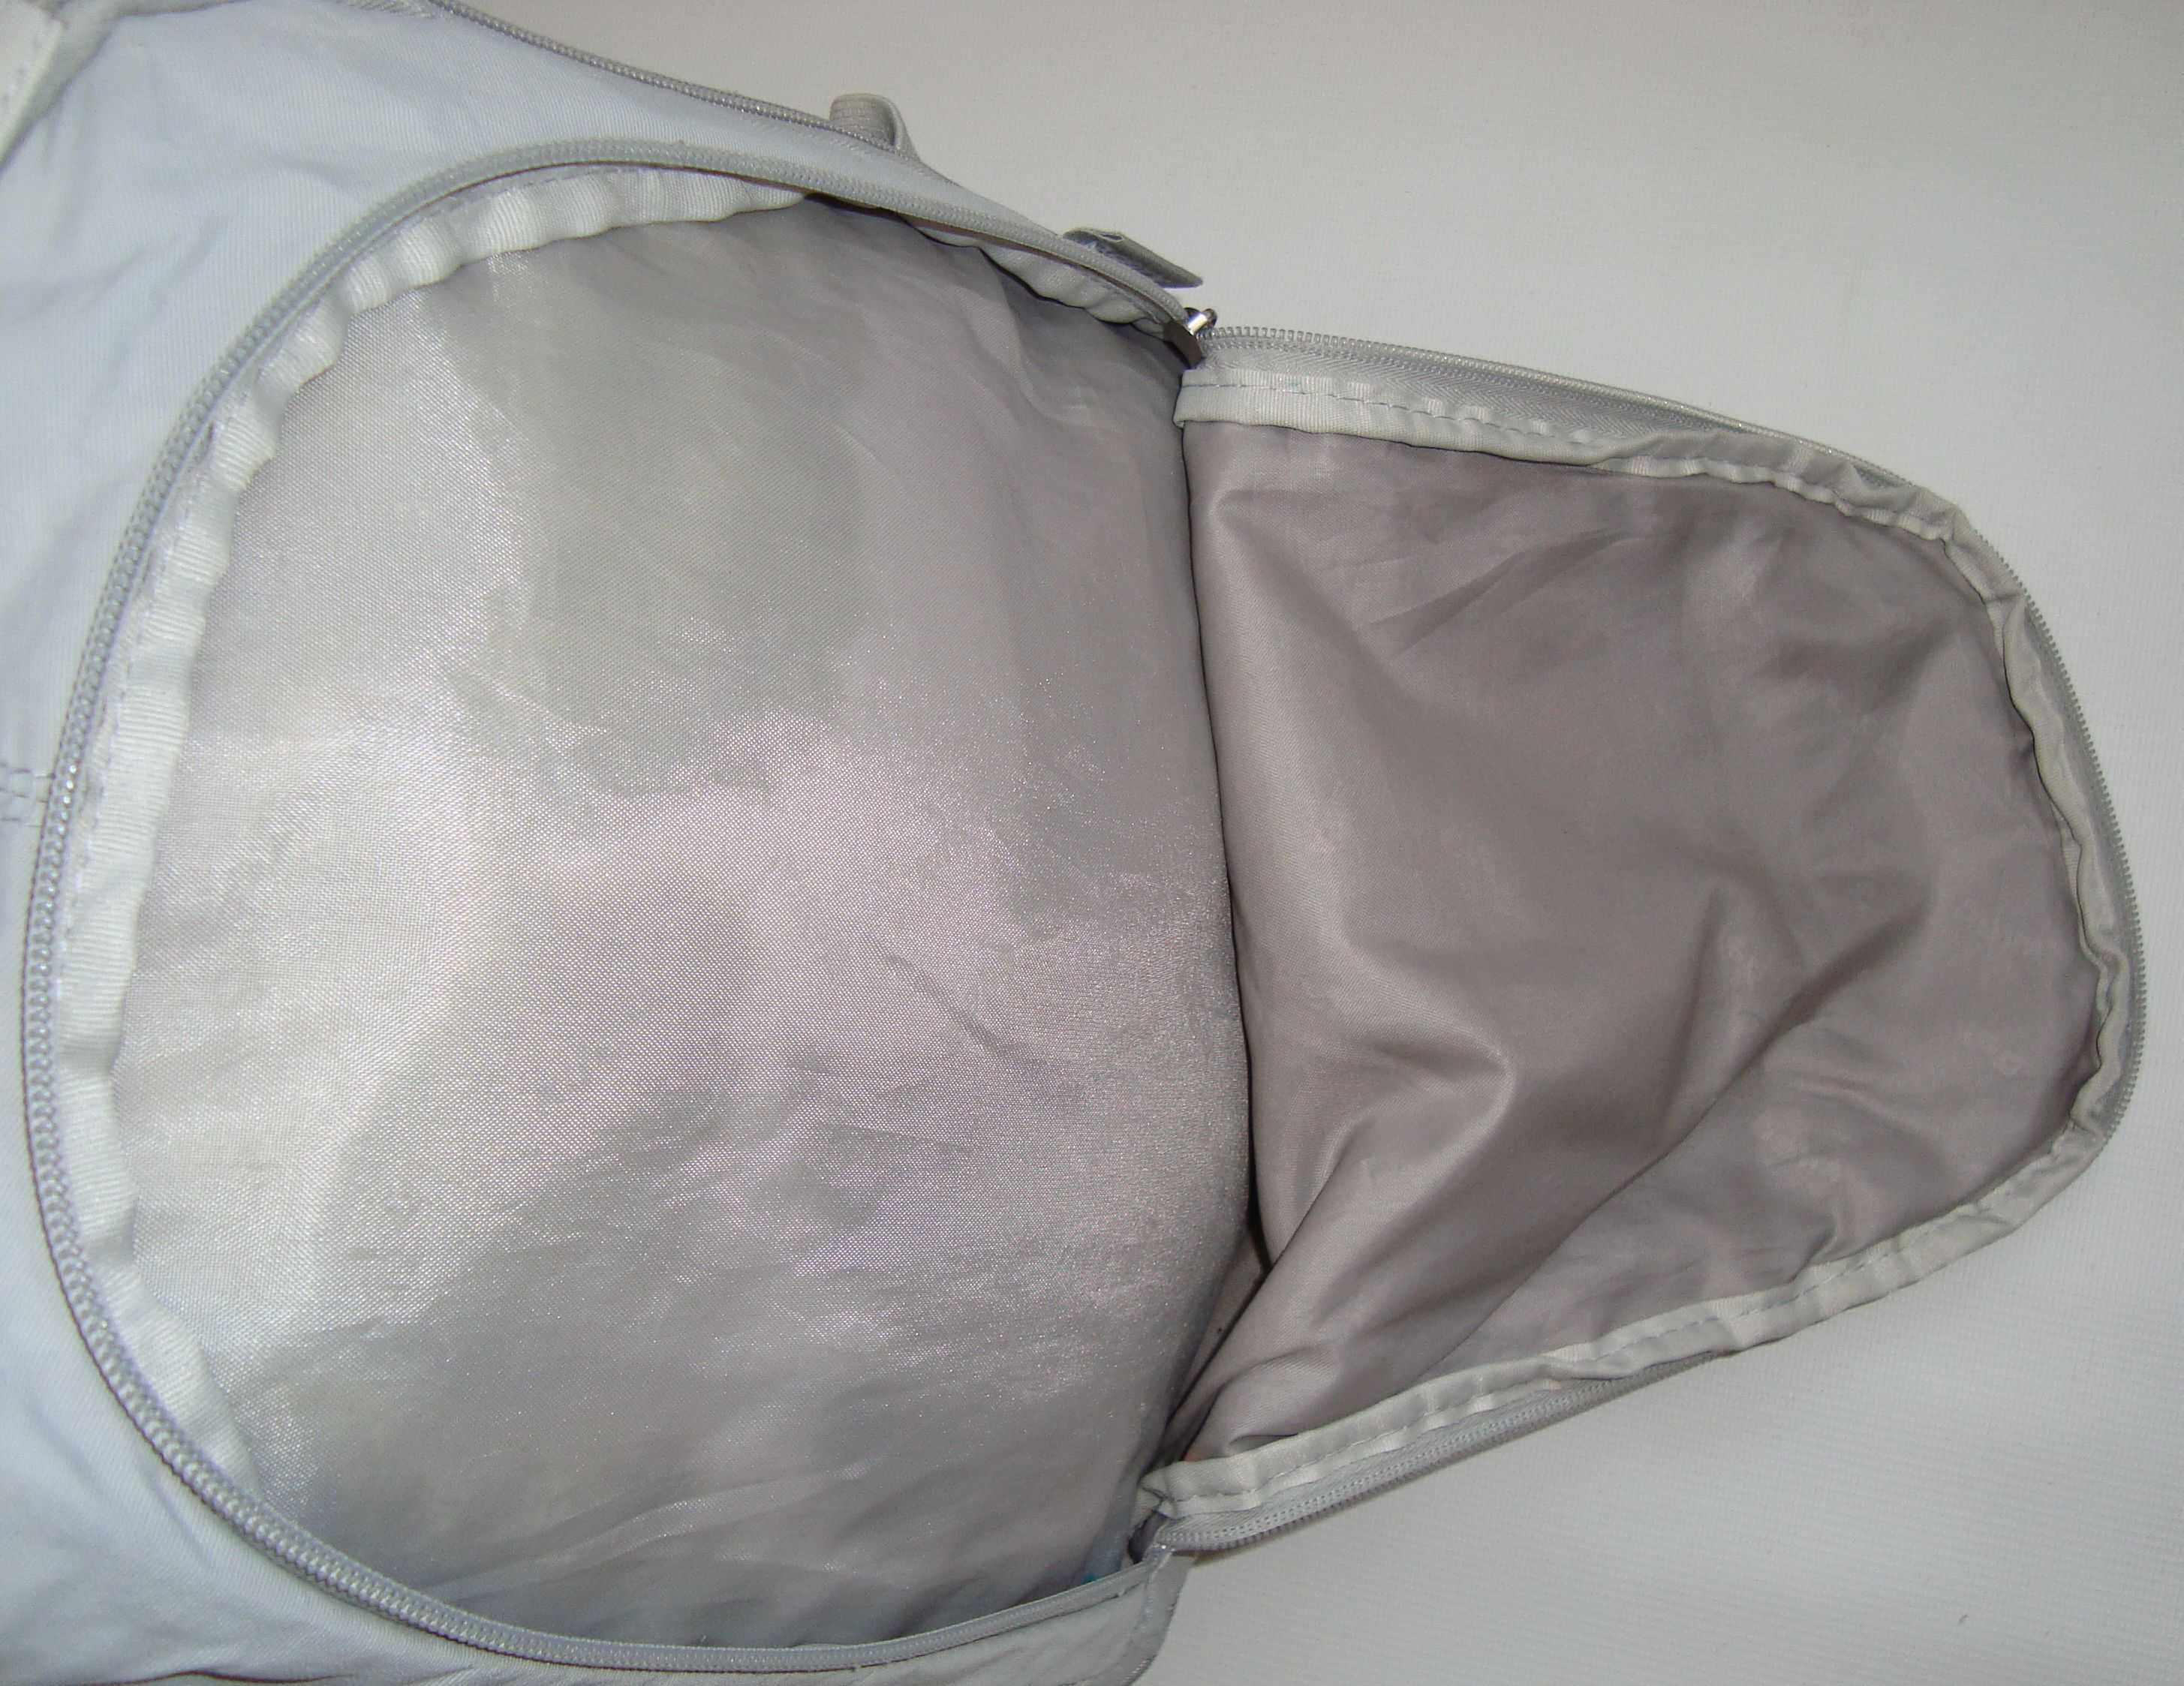 Рюкзак Kite Education Style 43x30x21 см серый, мягкий. Обмін - сам